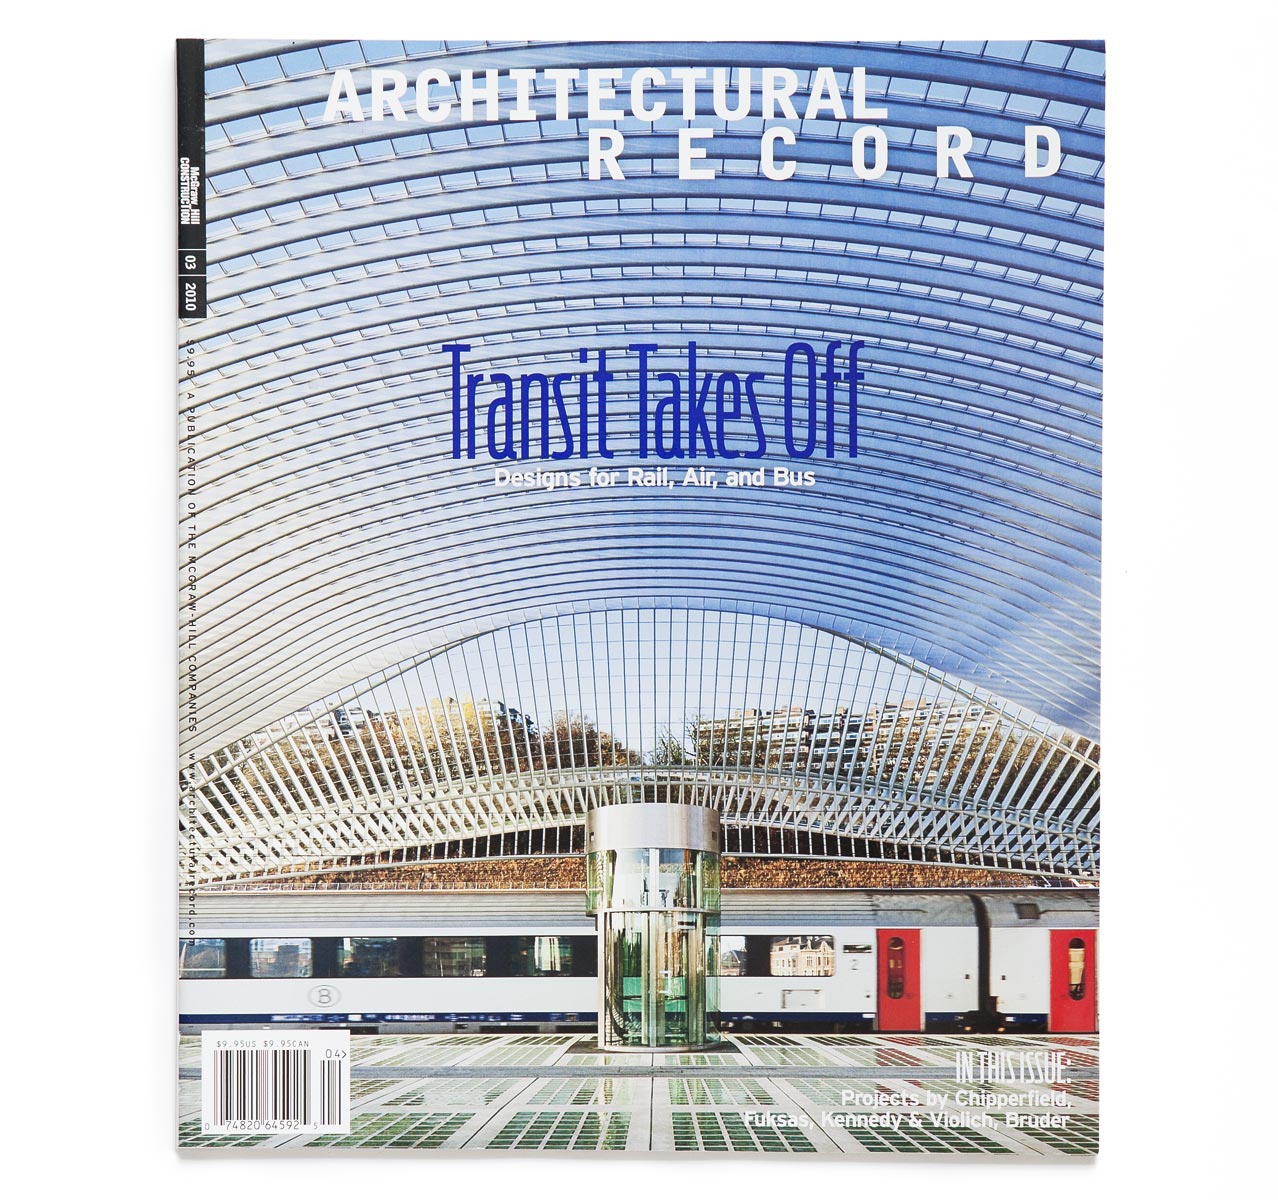 Calatrava-Liege-Record-James-Ewing-Cover2